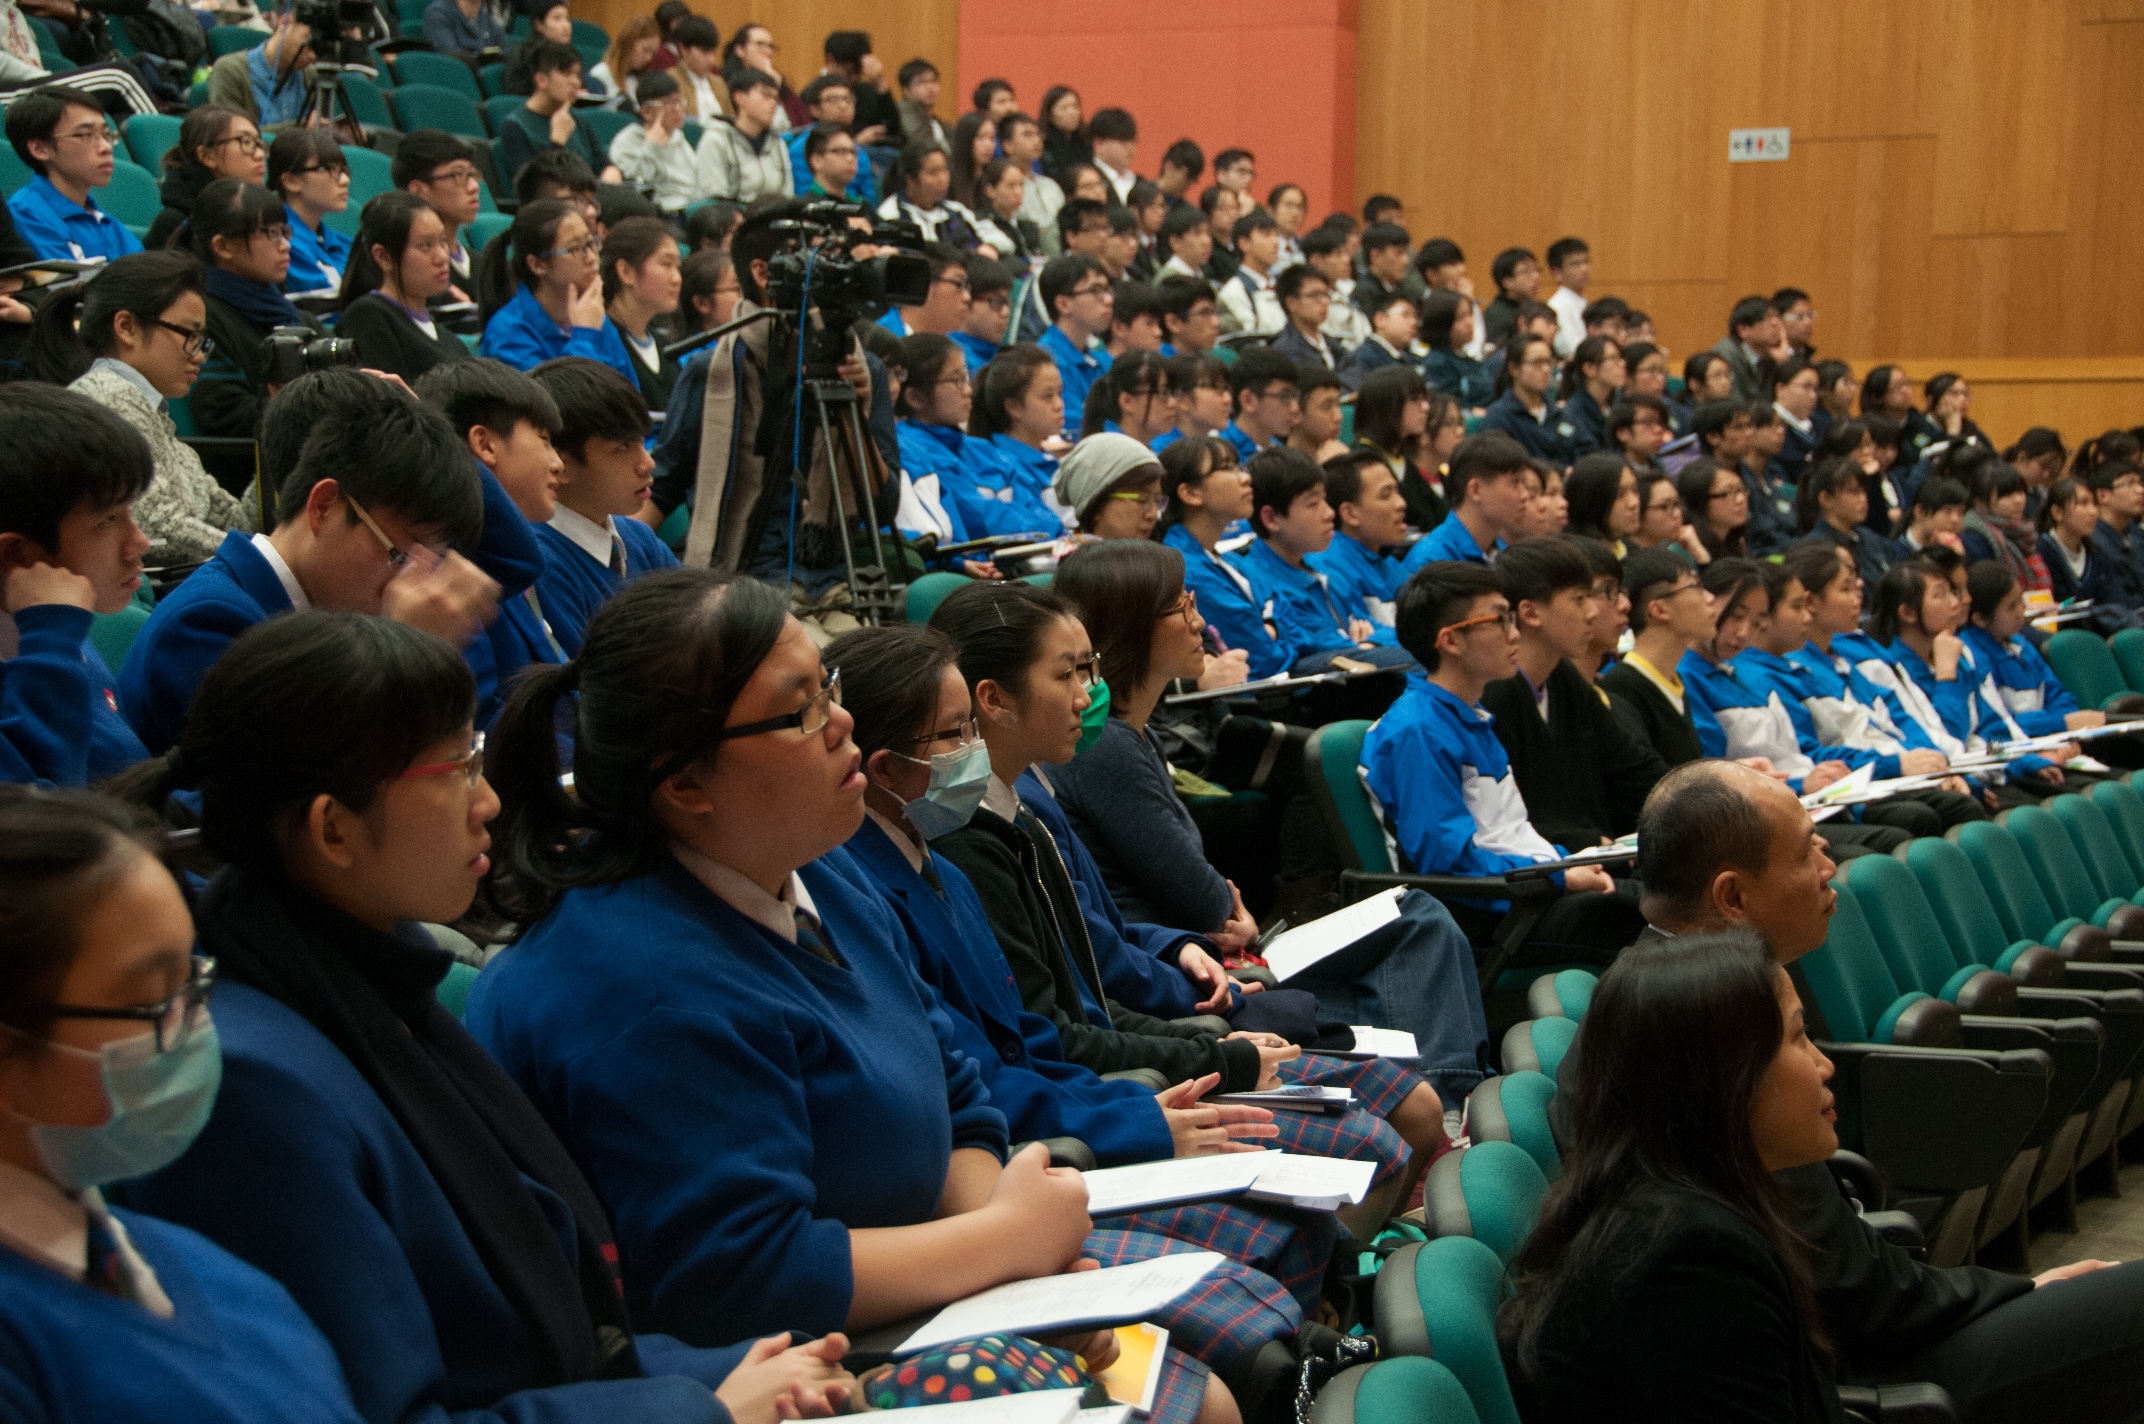 逾一百四十位中學師生參加是次講座